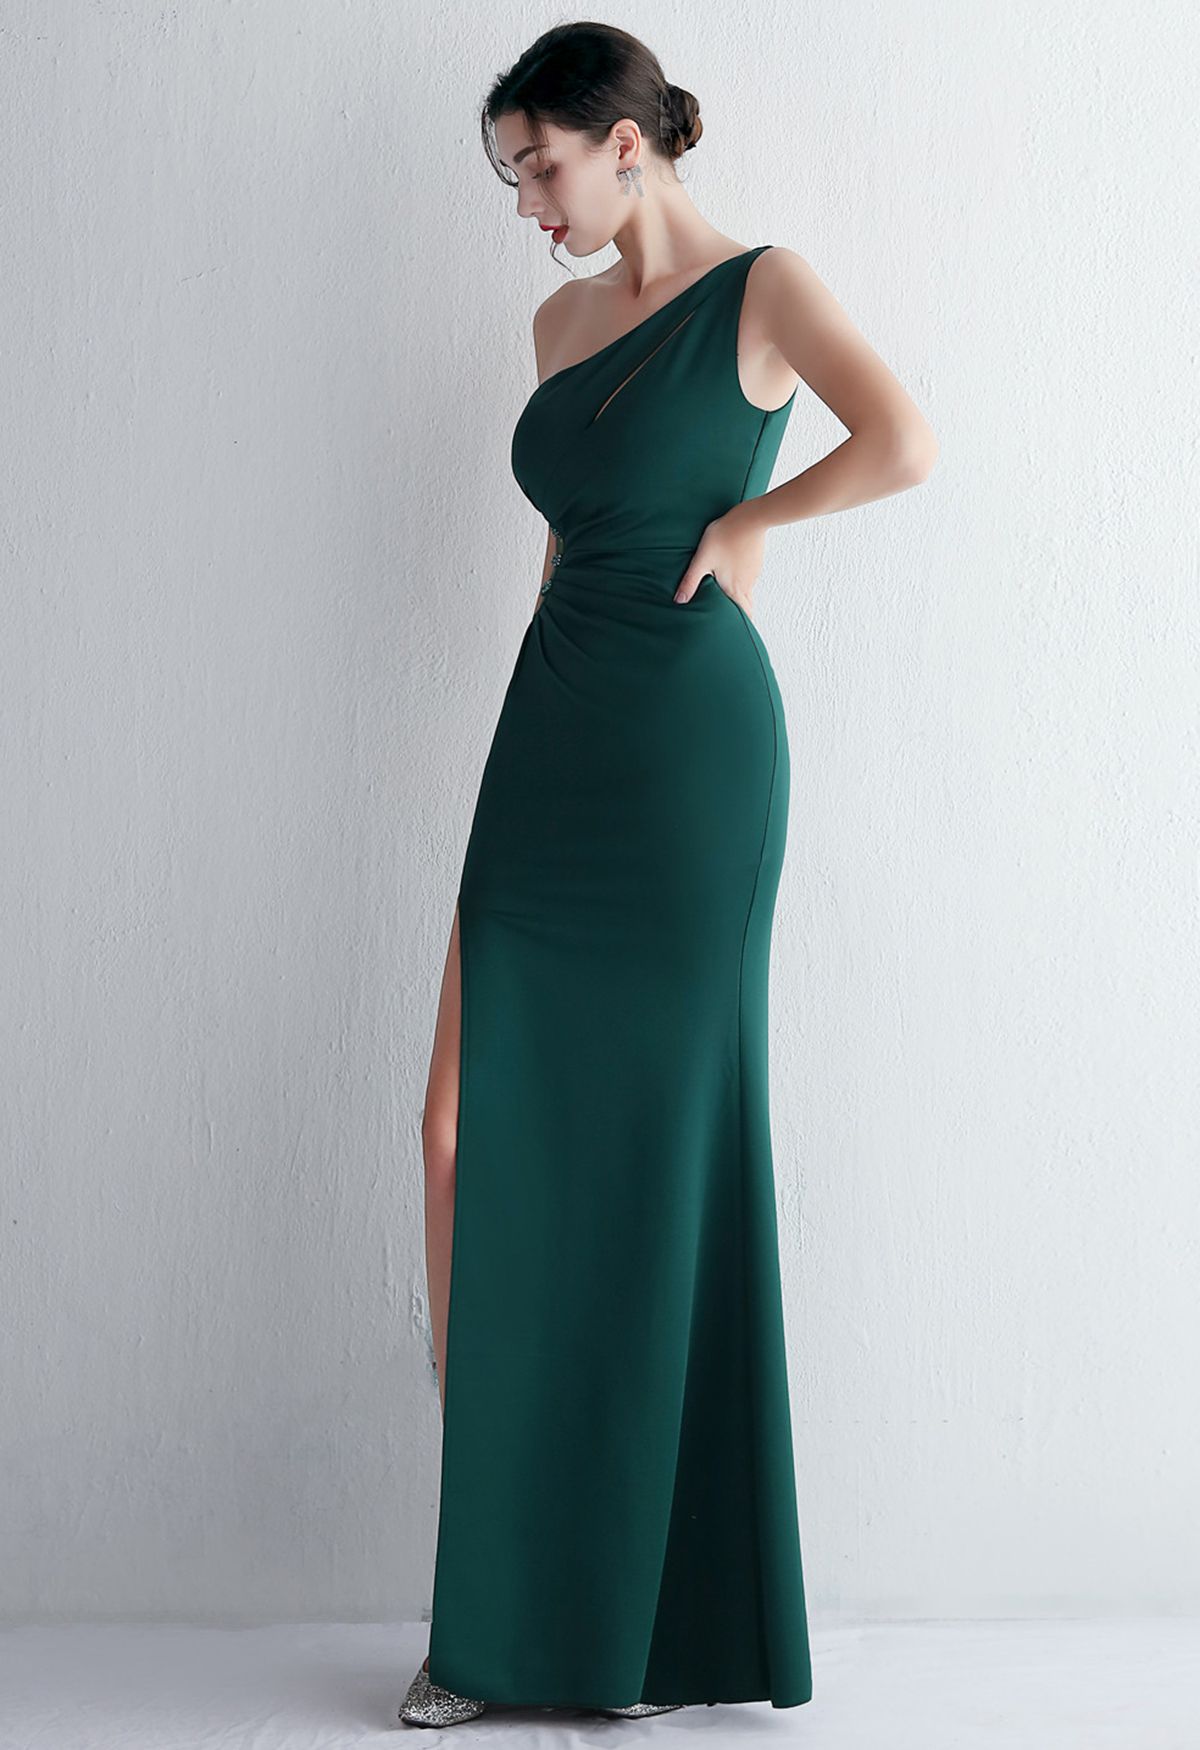 فستان مفتوح بكتف واحد باللون الأخضر الداكن